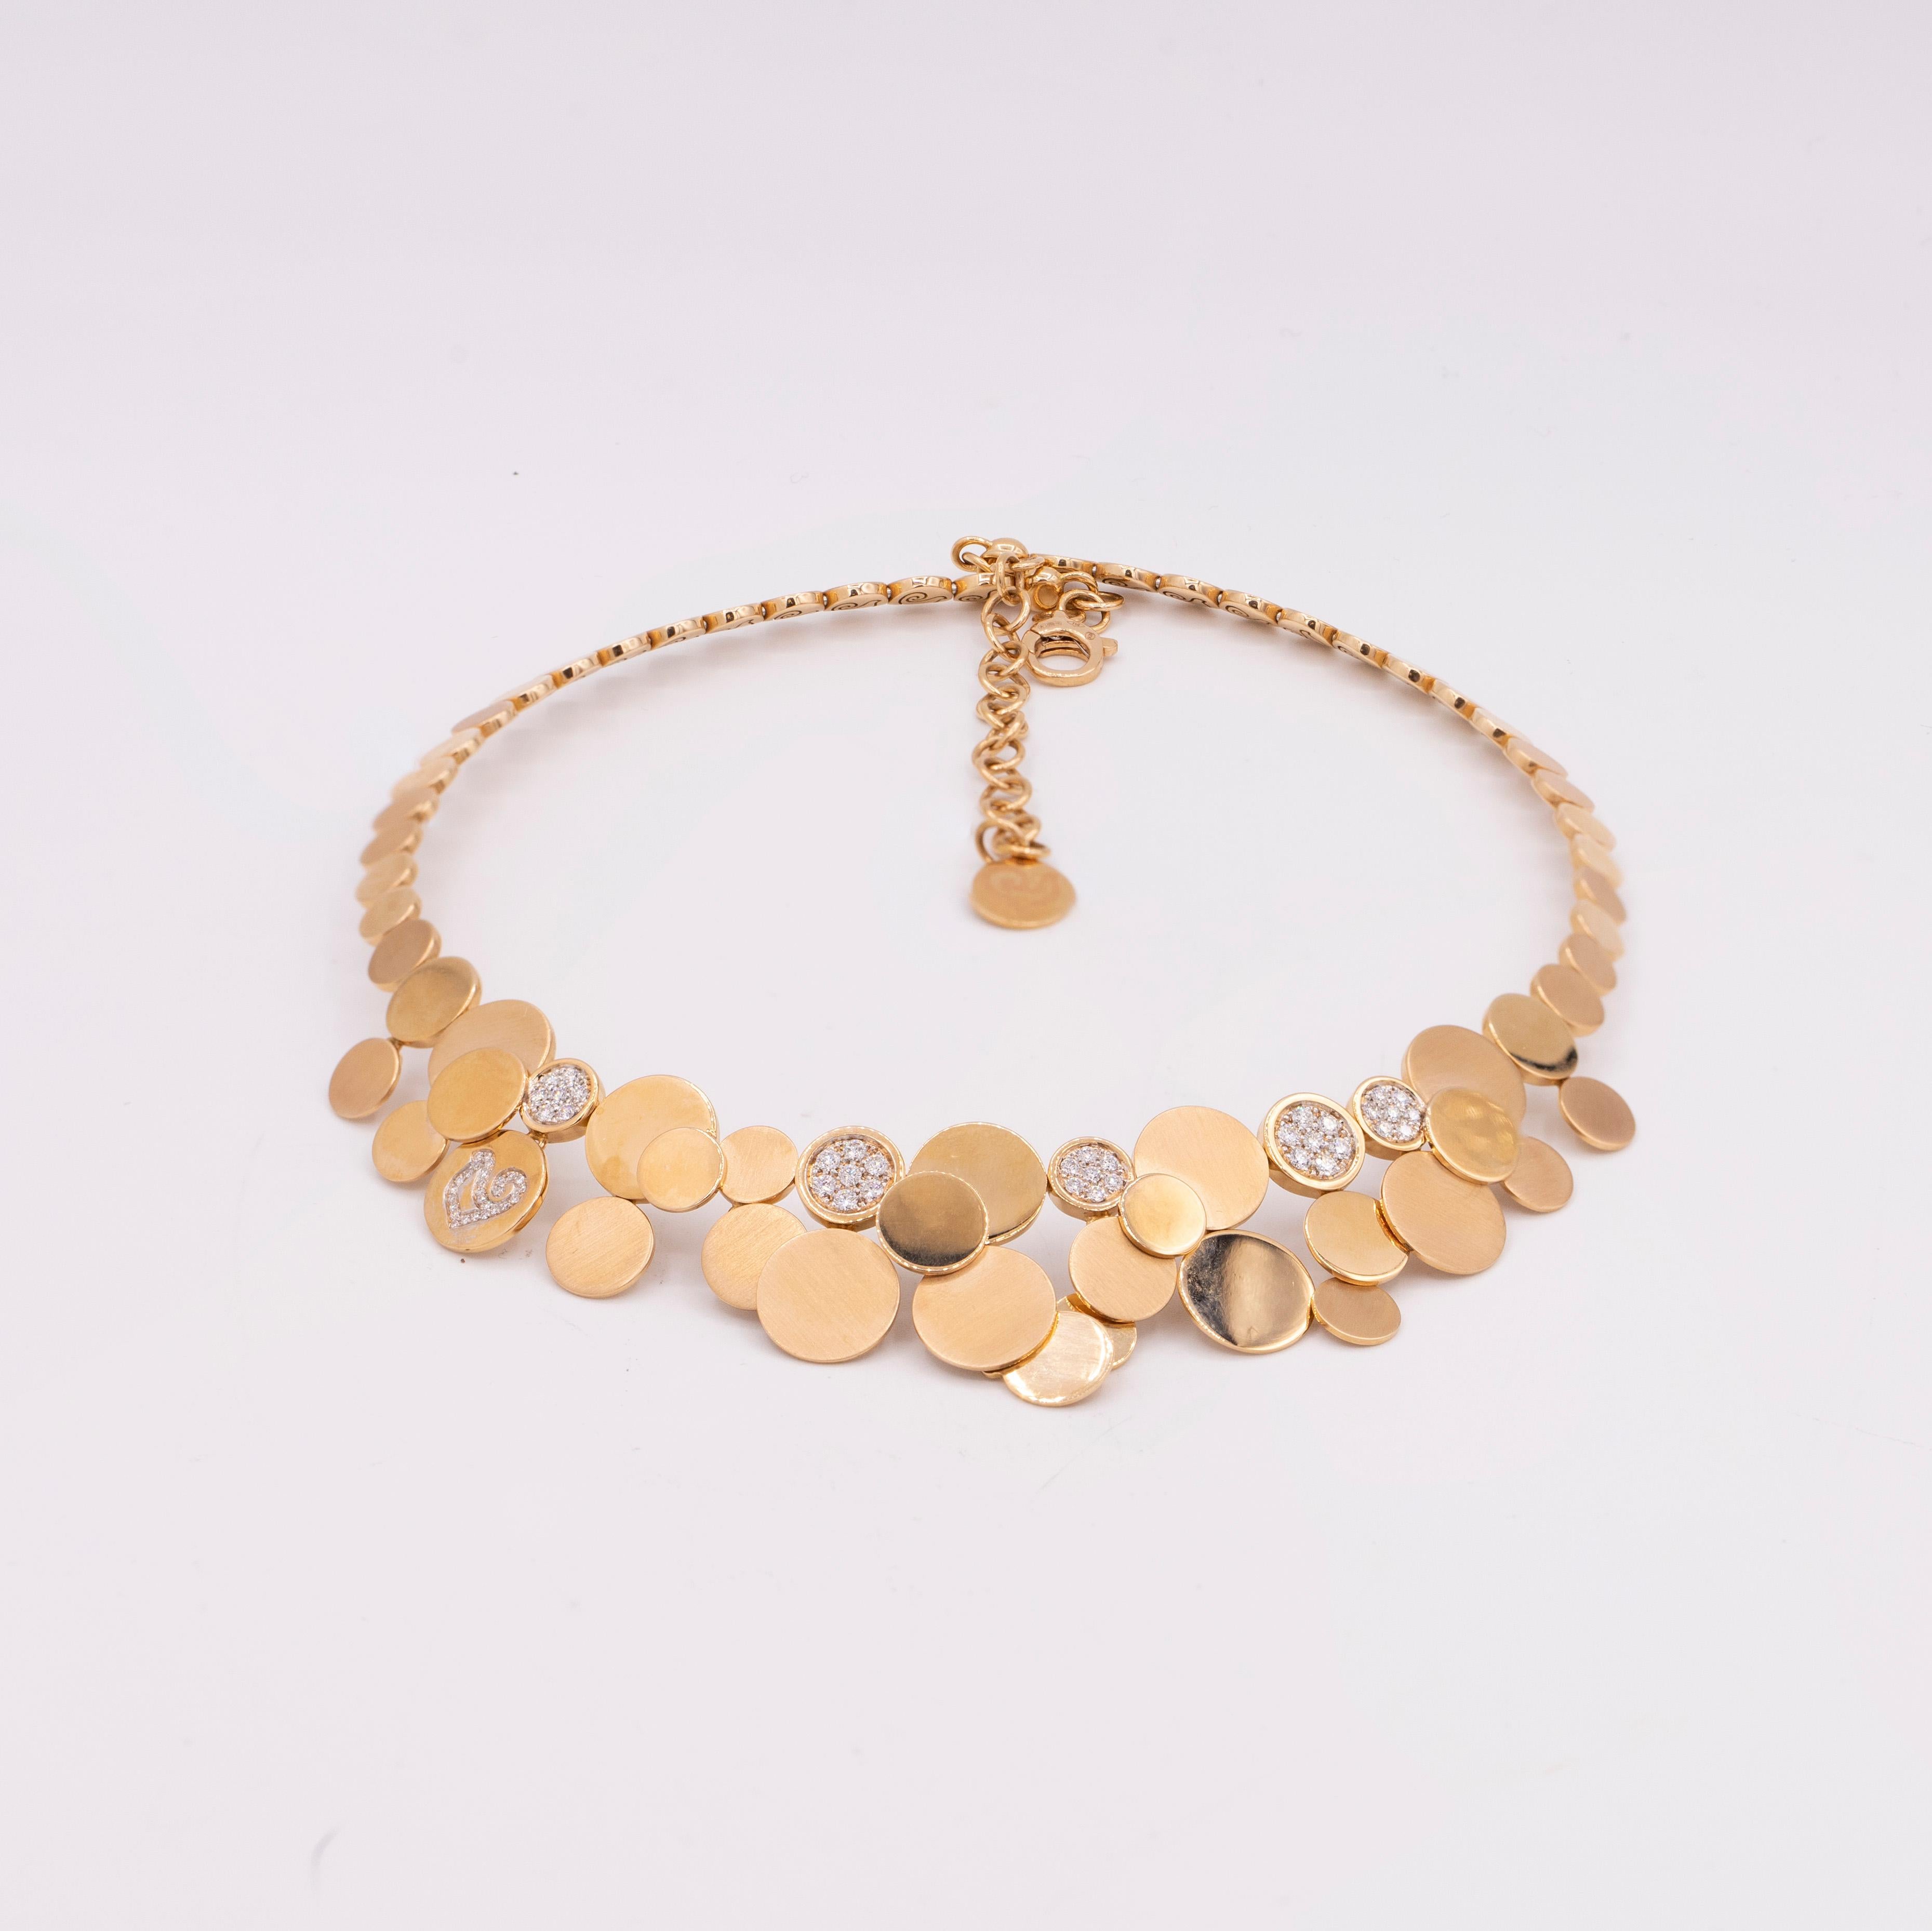 Contemporary Chantecler Paillettes 18k Choker Necklace